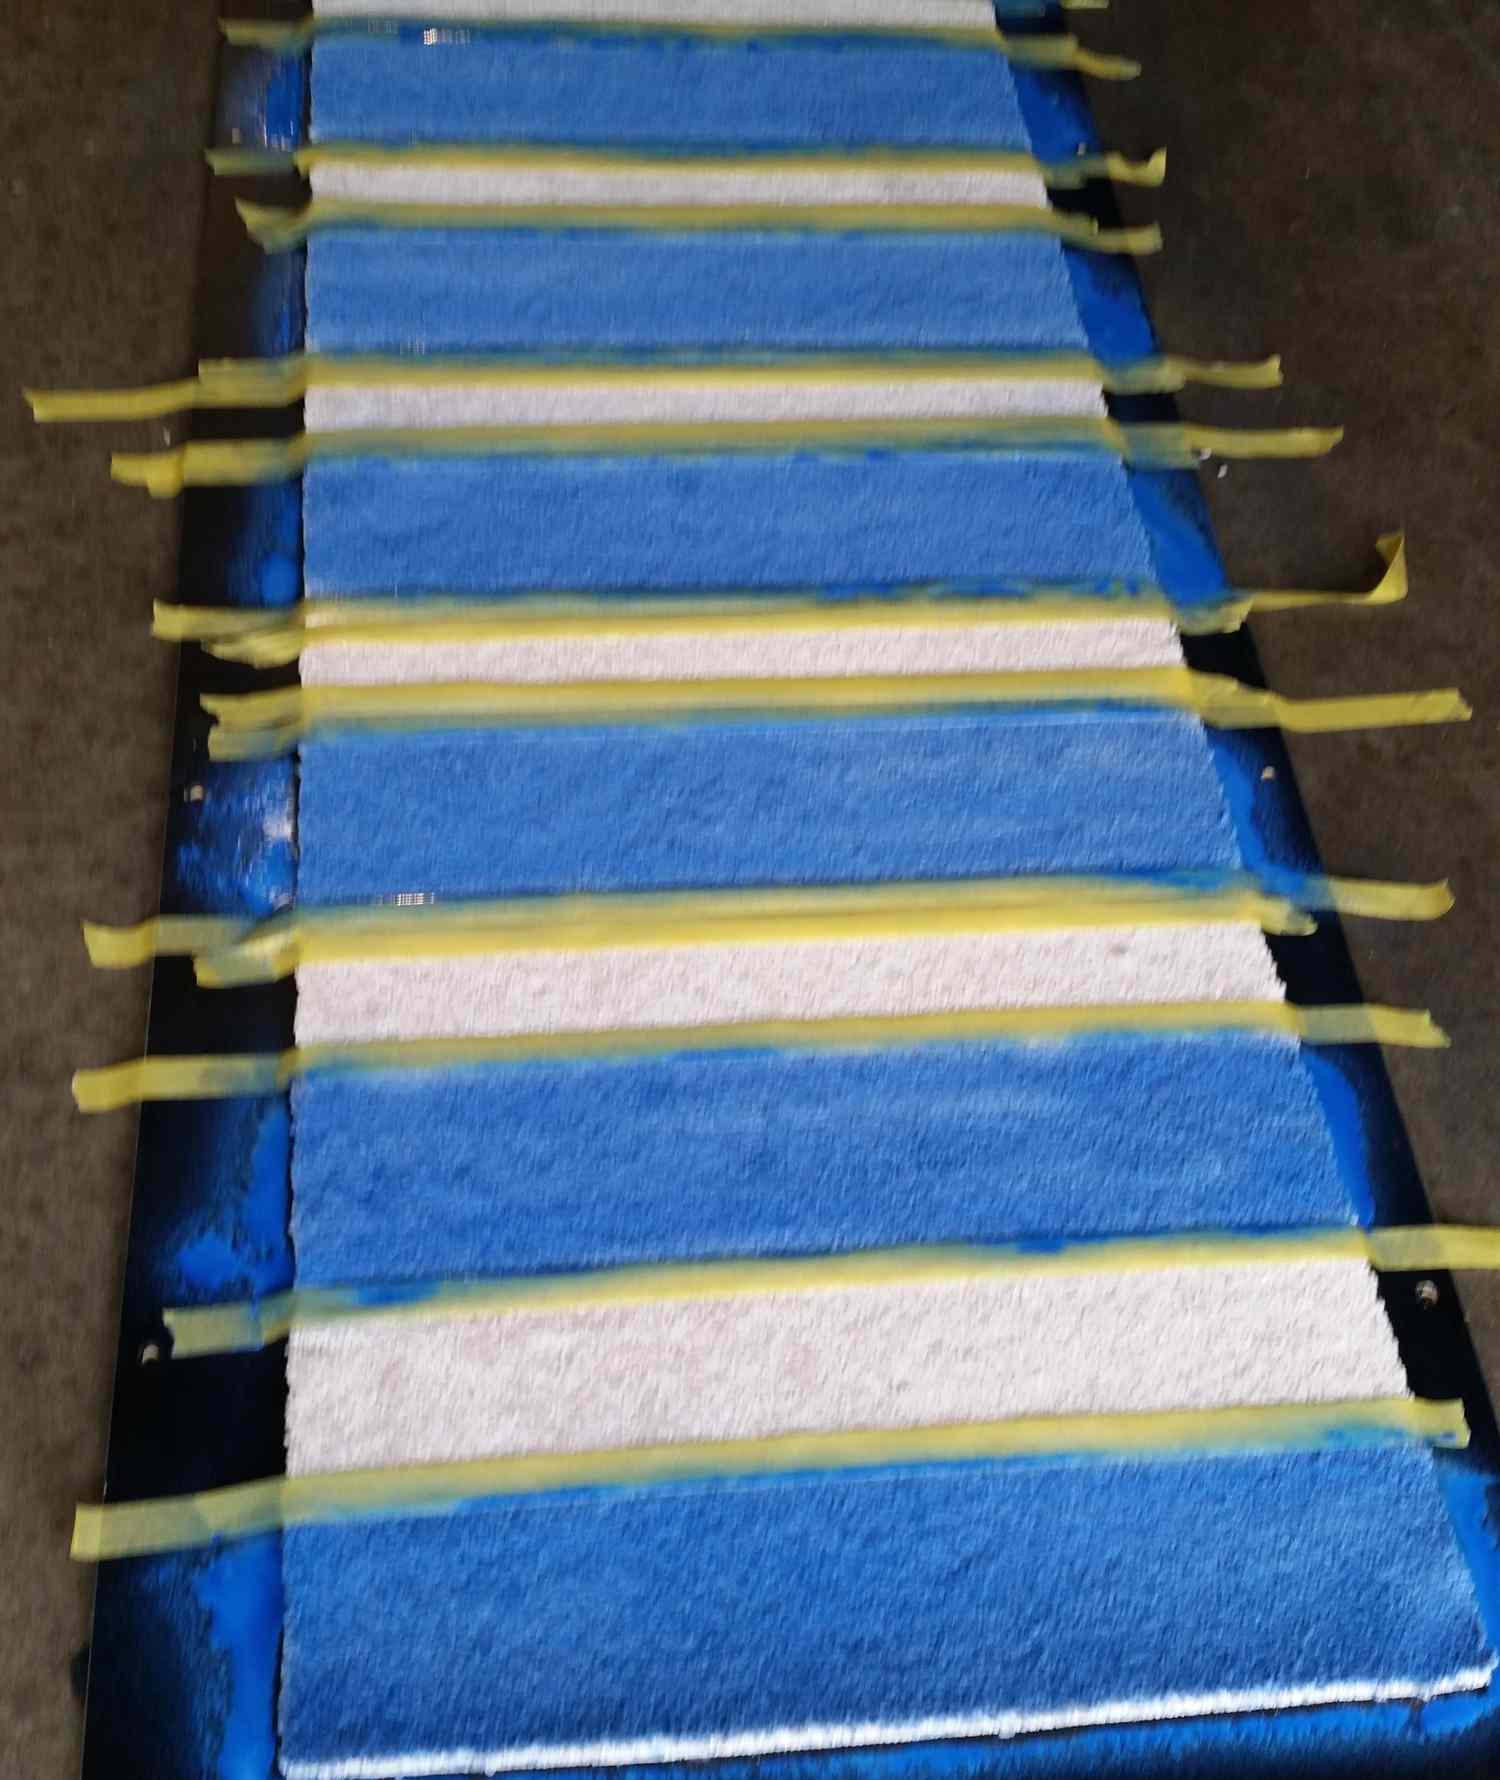 Tapis roulant avec stipes de peinture bleue appliquée entre les lignes de tapisserie